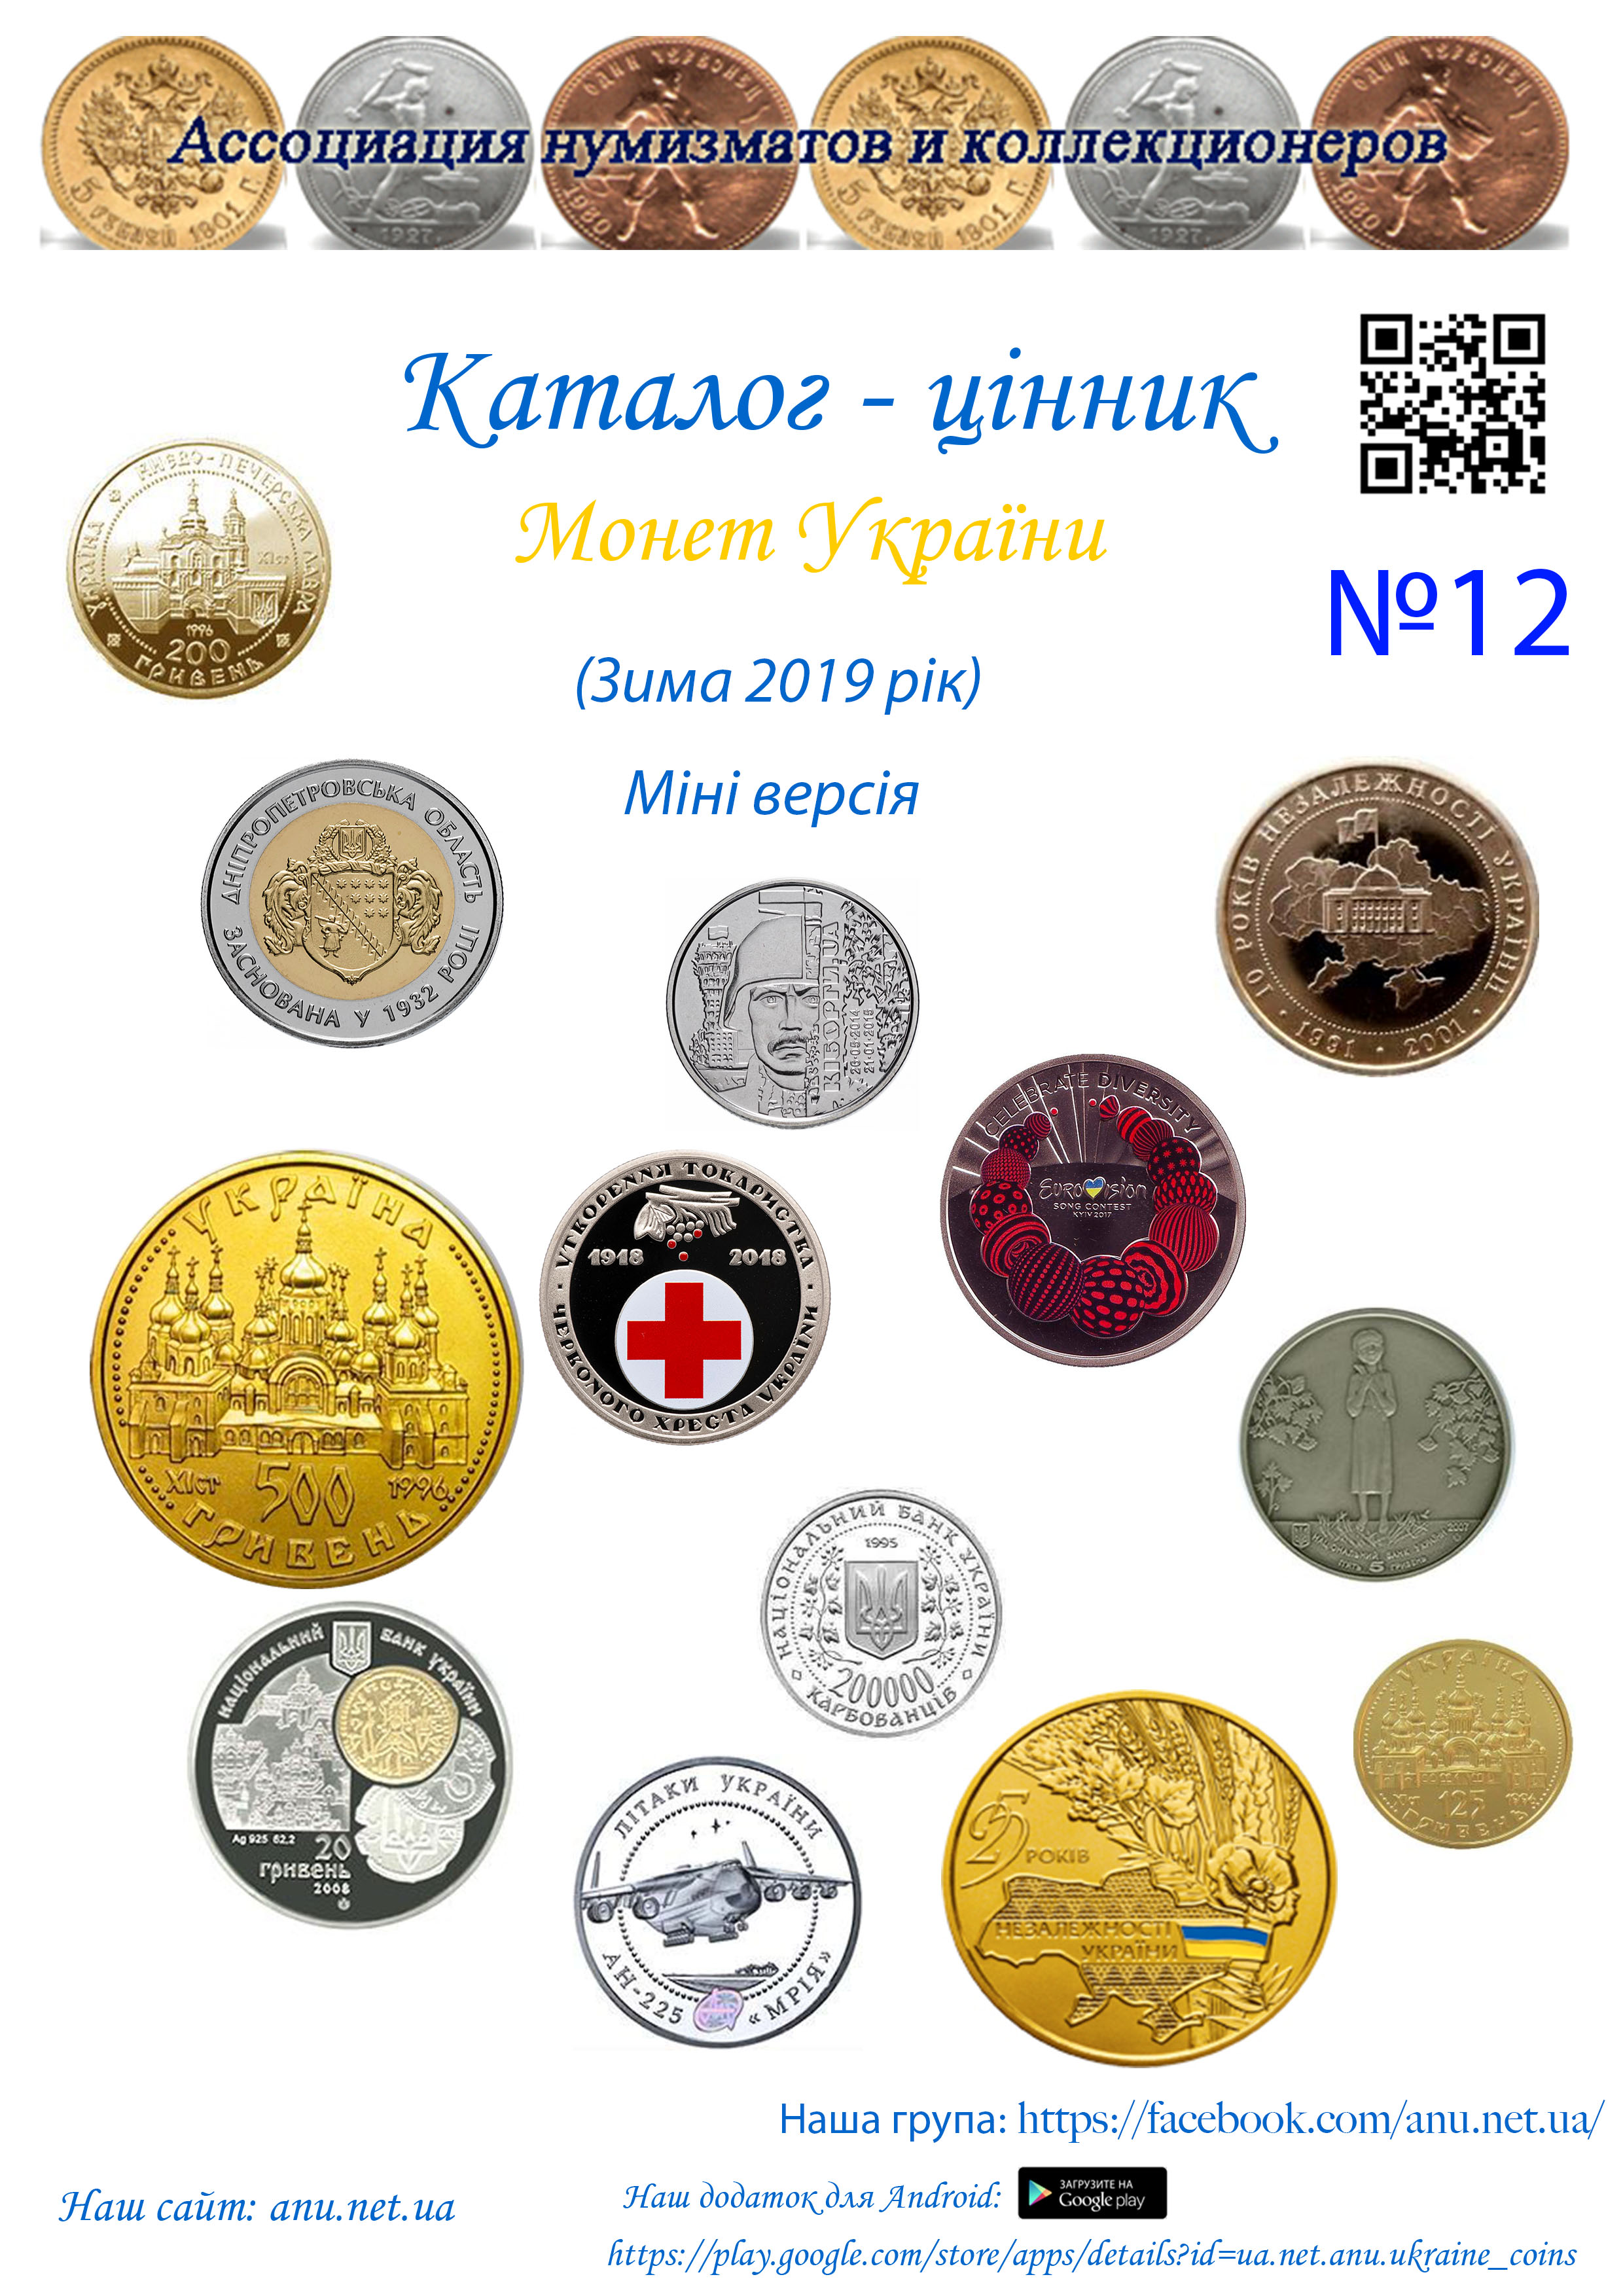 Version_12 Ассоциация нумизматов и коллекционеров Украины